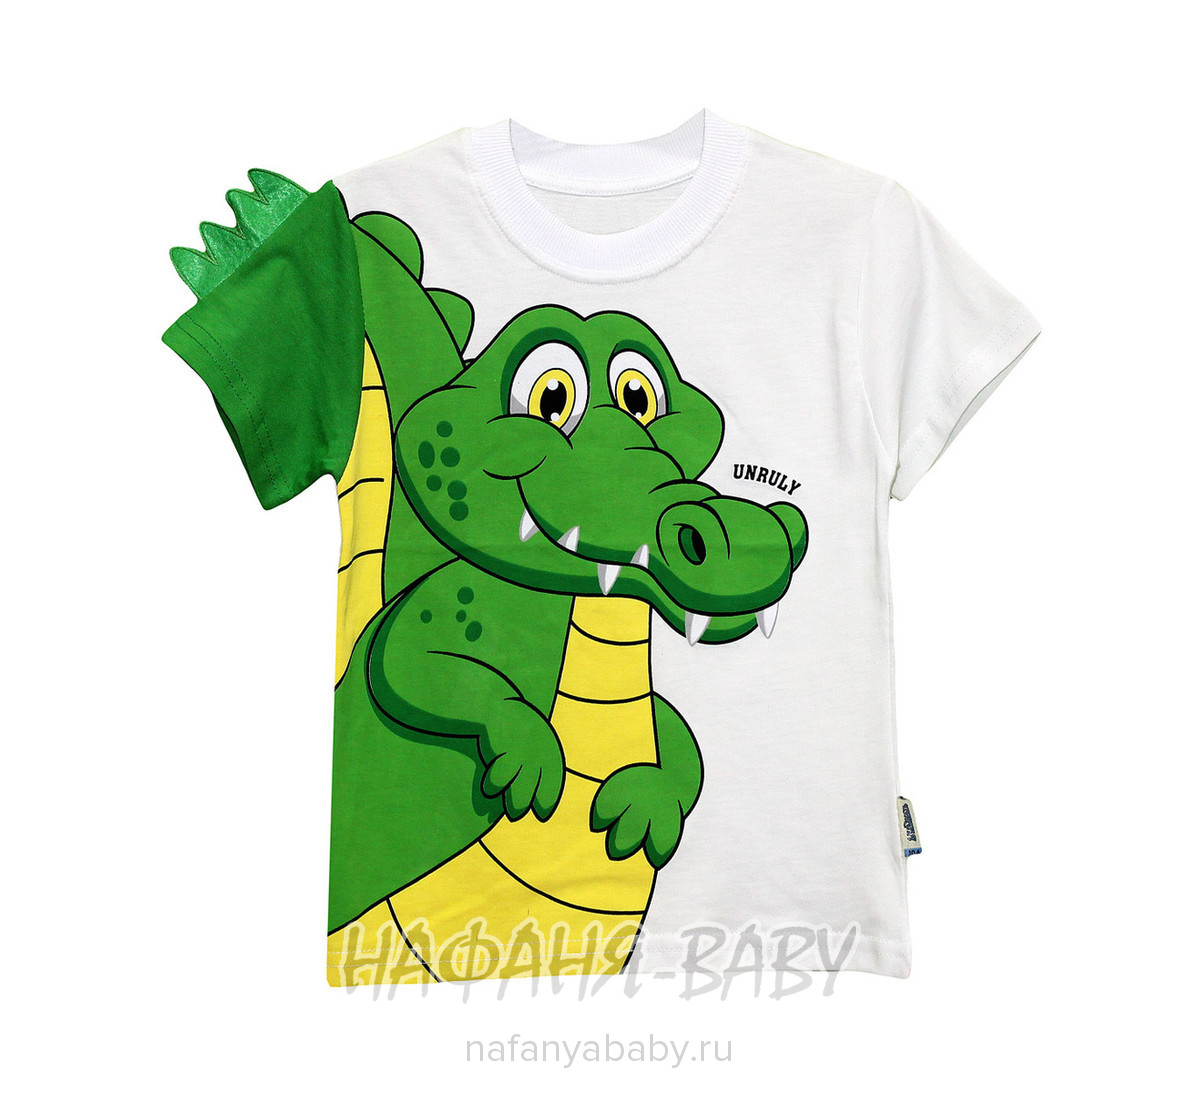 Детская футболка UNRULY арт: 2923, 1-4 года, 5-9 лет, оптом Турция